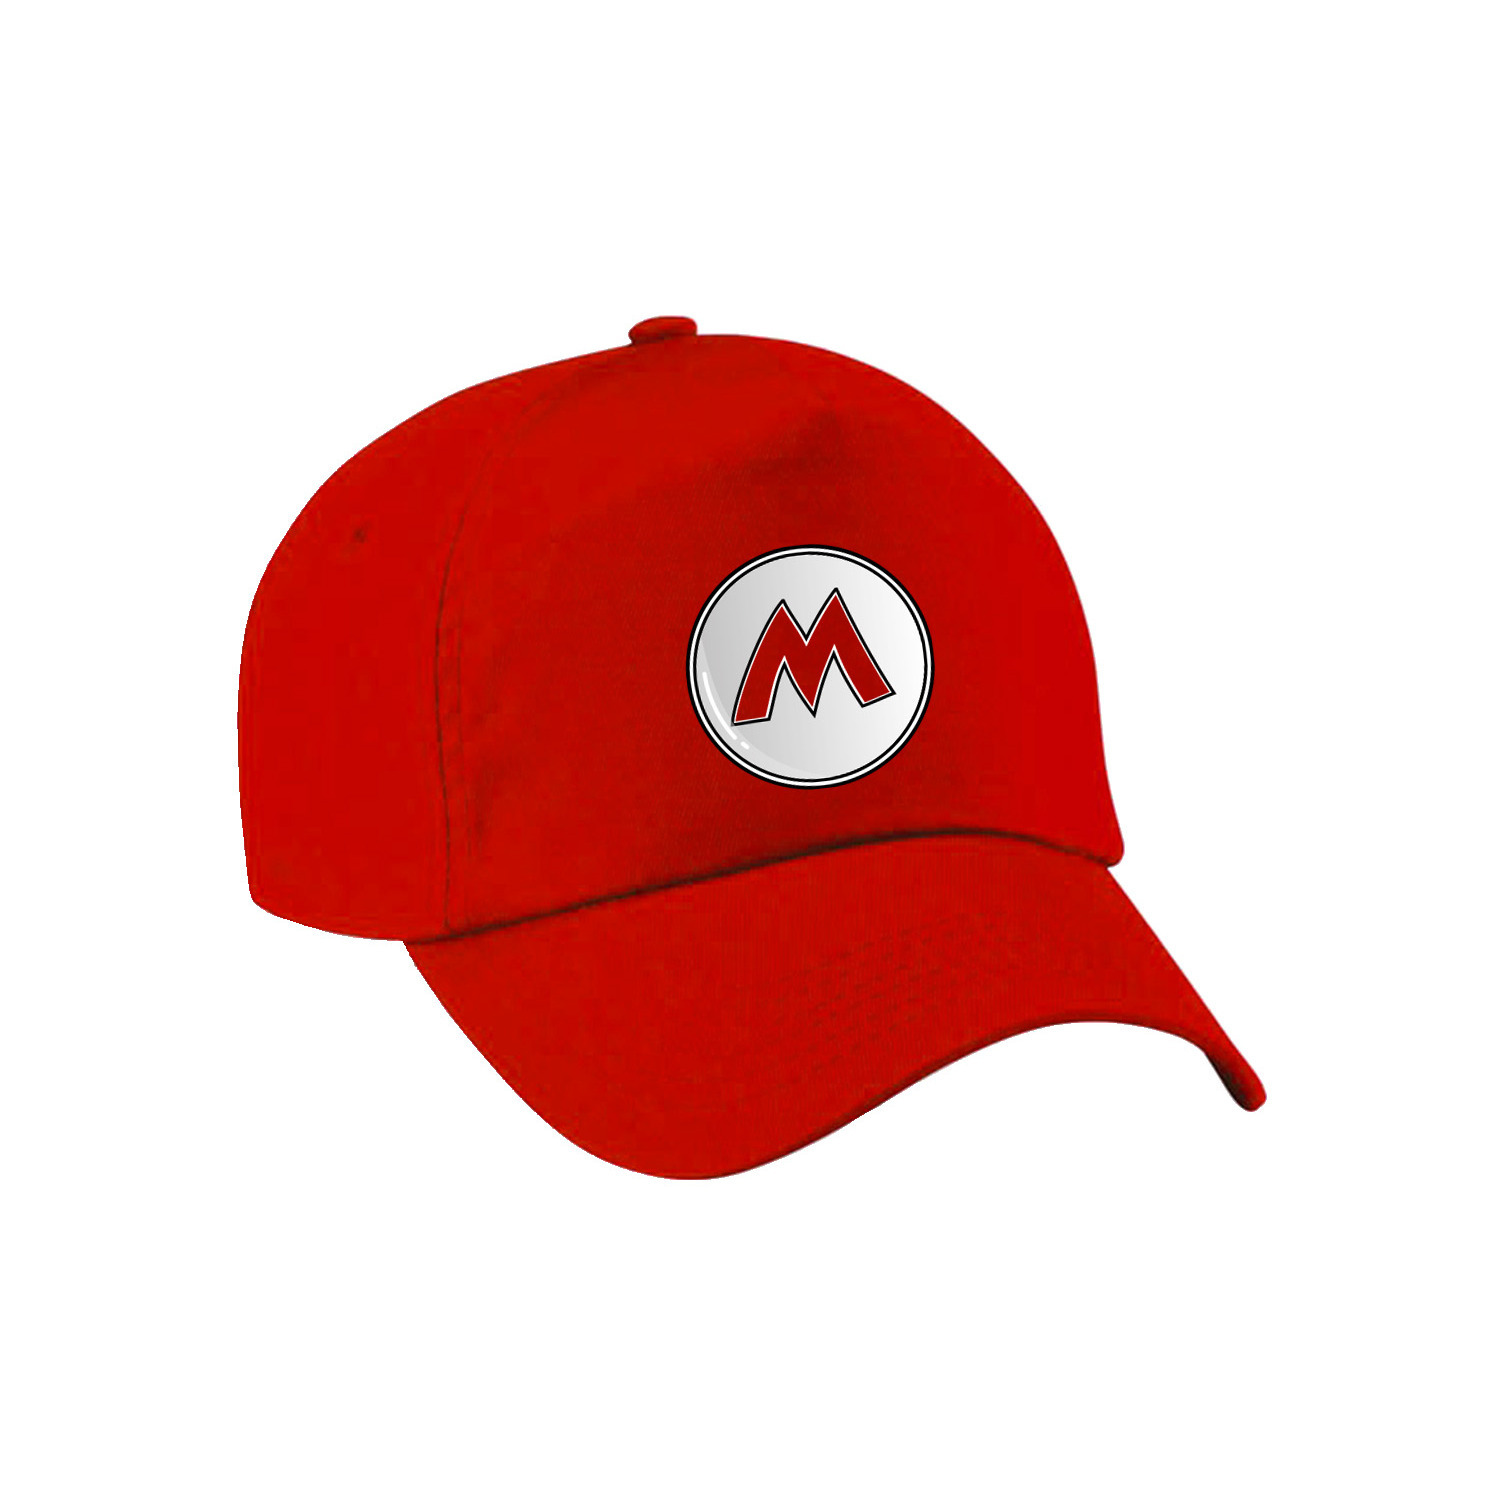 Game verkleed pet loodgieter Mario rood kinderen unisex carnaval-themafeest outfit